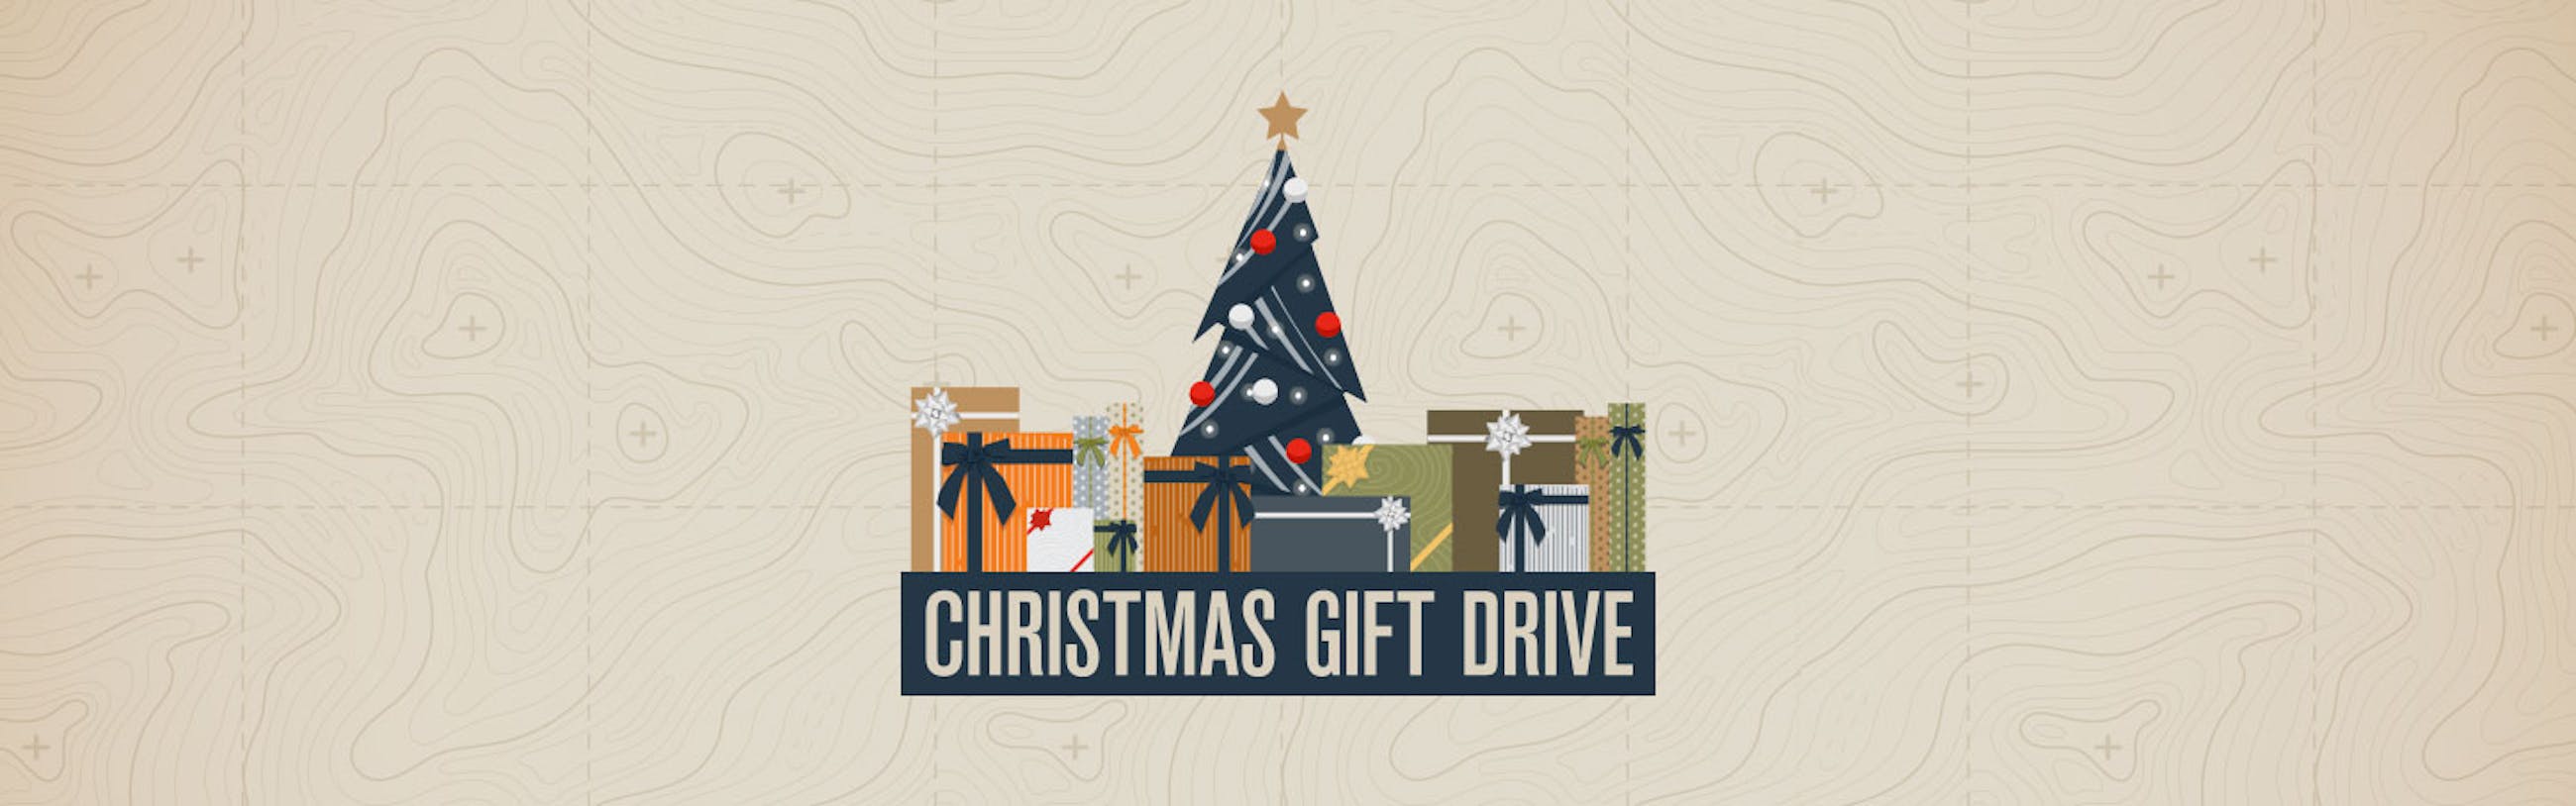 christmas gift drive